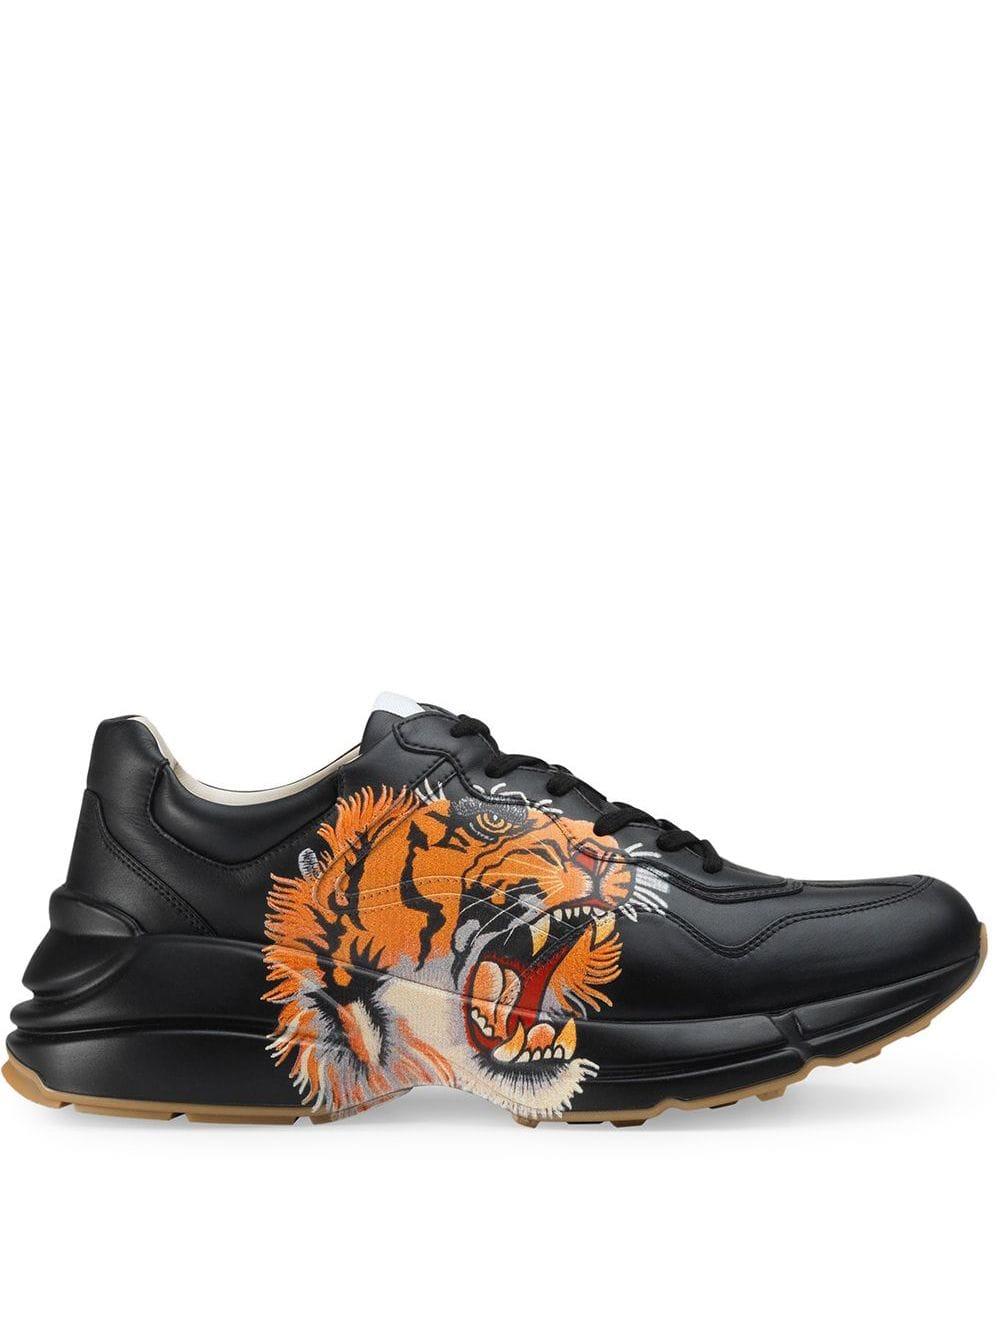 tiger shoes gucci